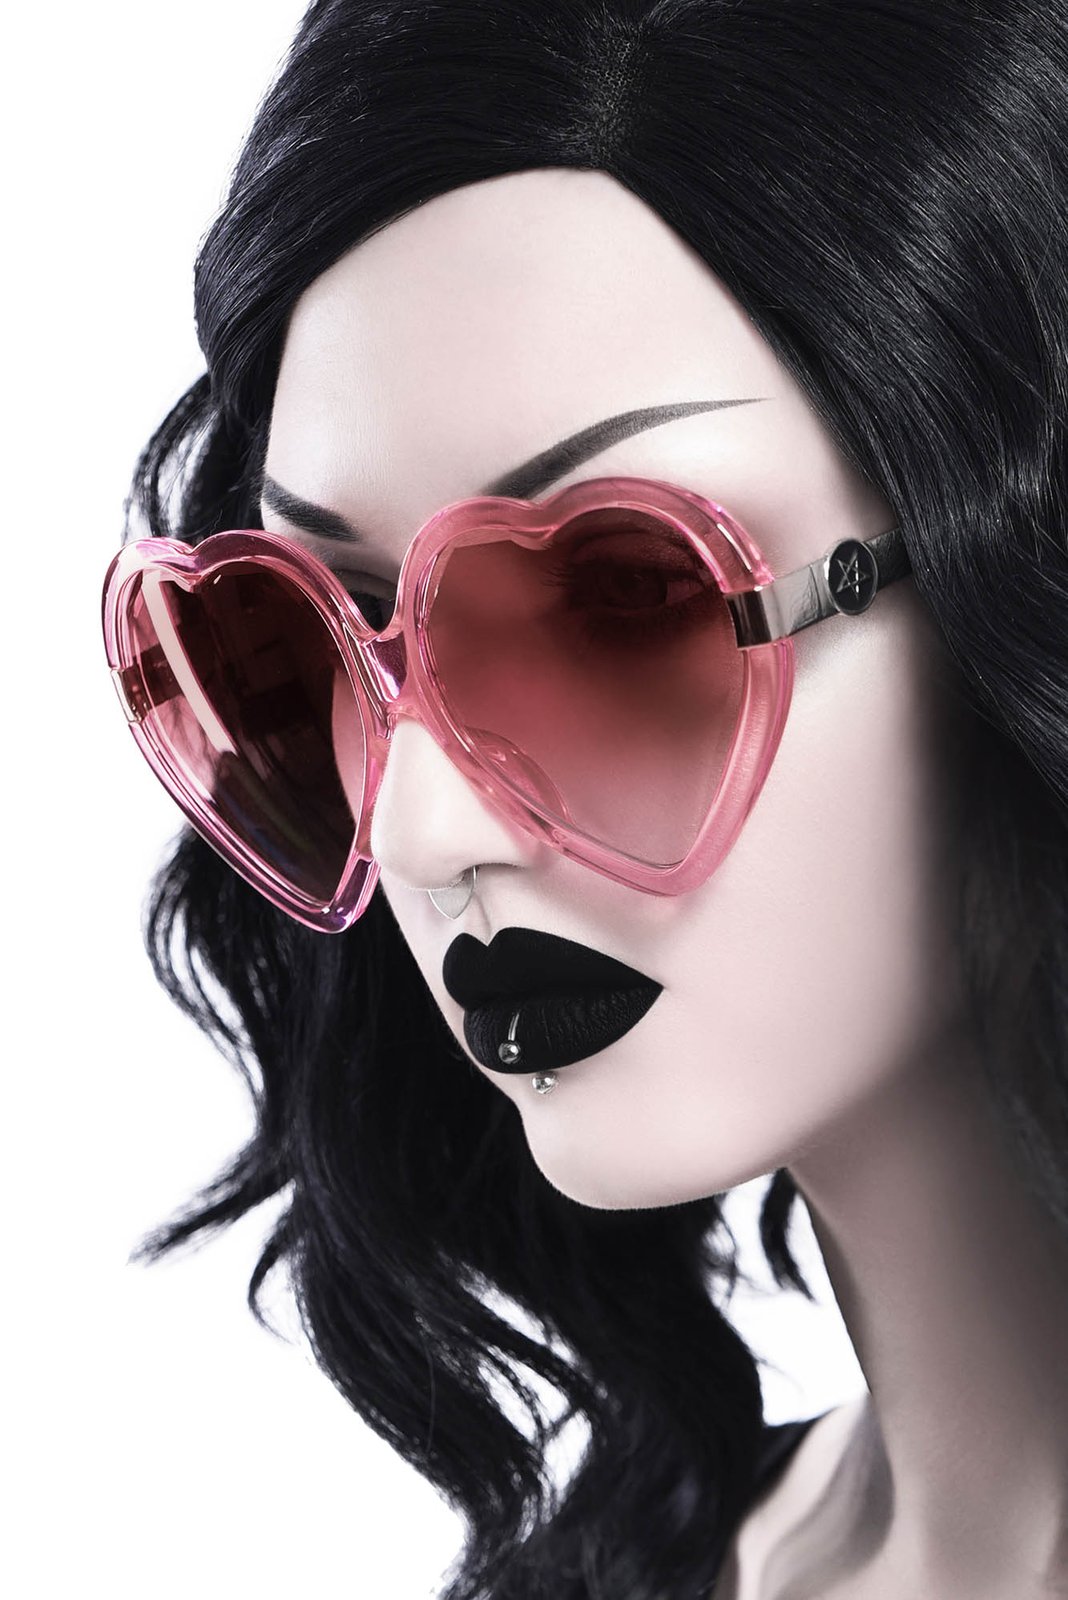 Quinn Sunglasses [Flamingo]